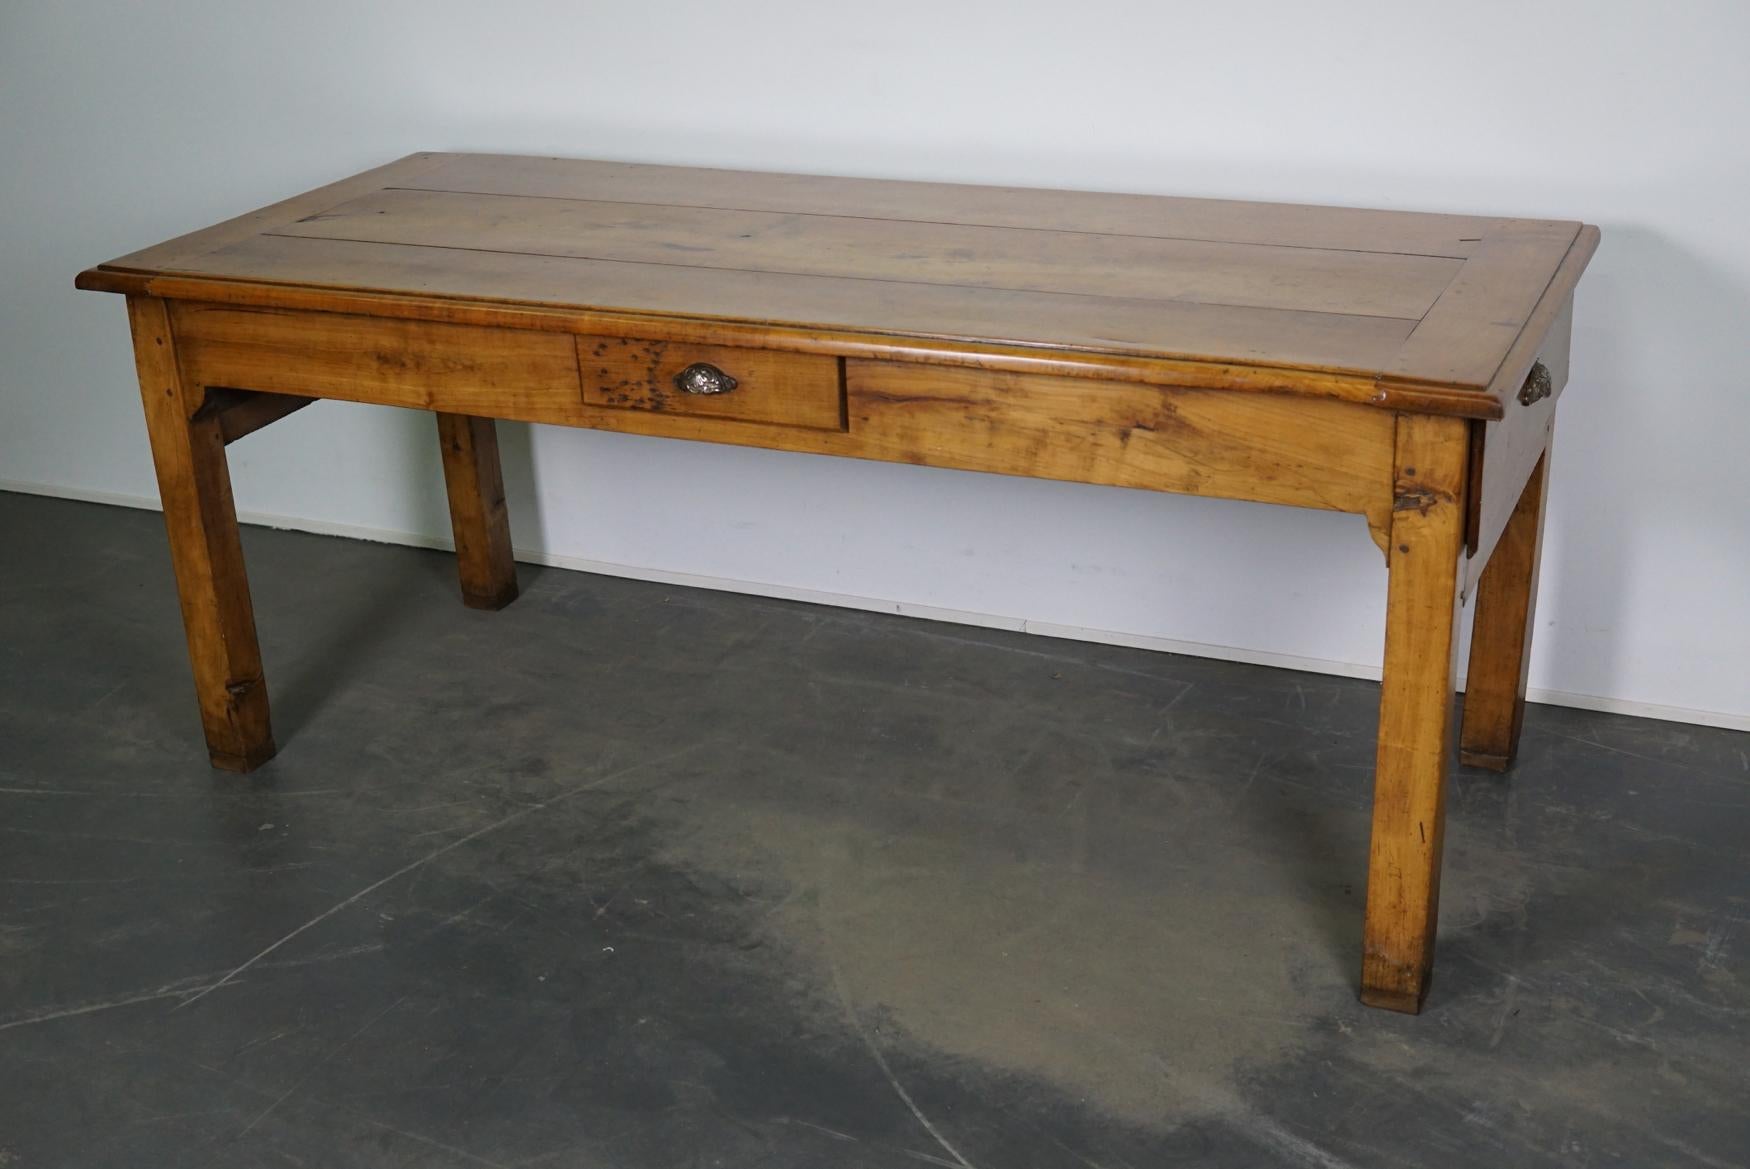 Dieser antike französische Tisch wurde Ende des 19. Jahrhunderts aus Kirsche gefertigt und diente früher als Vorbereitungstisch in einer Küche. In den beiden großen Schubladen wurden die Baguettes aufbewahrt, und es gibt auch eine kleinere